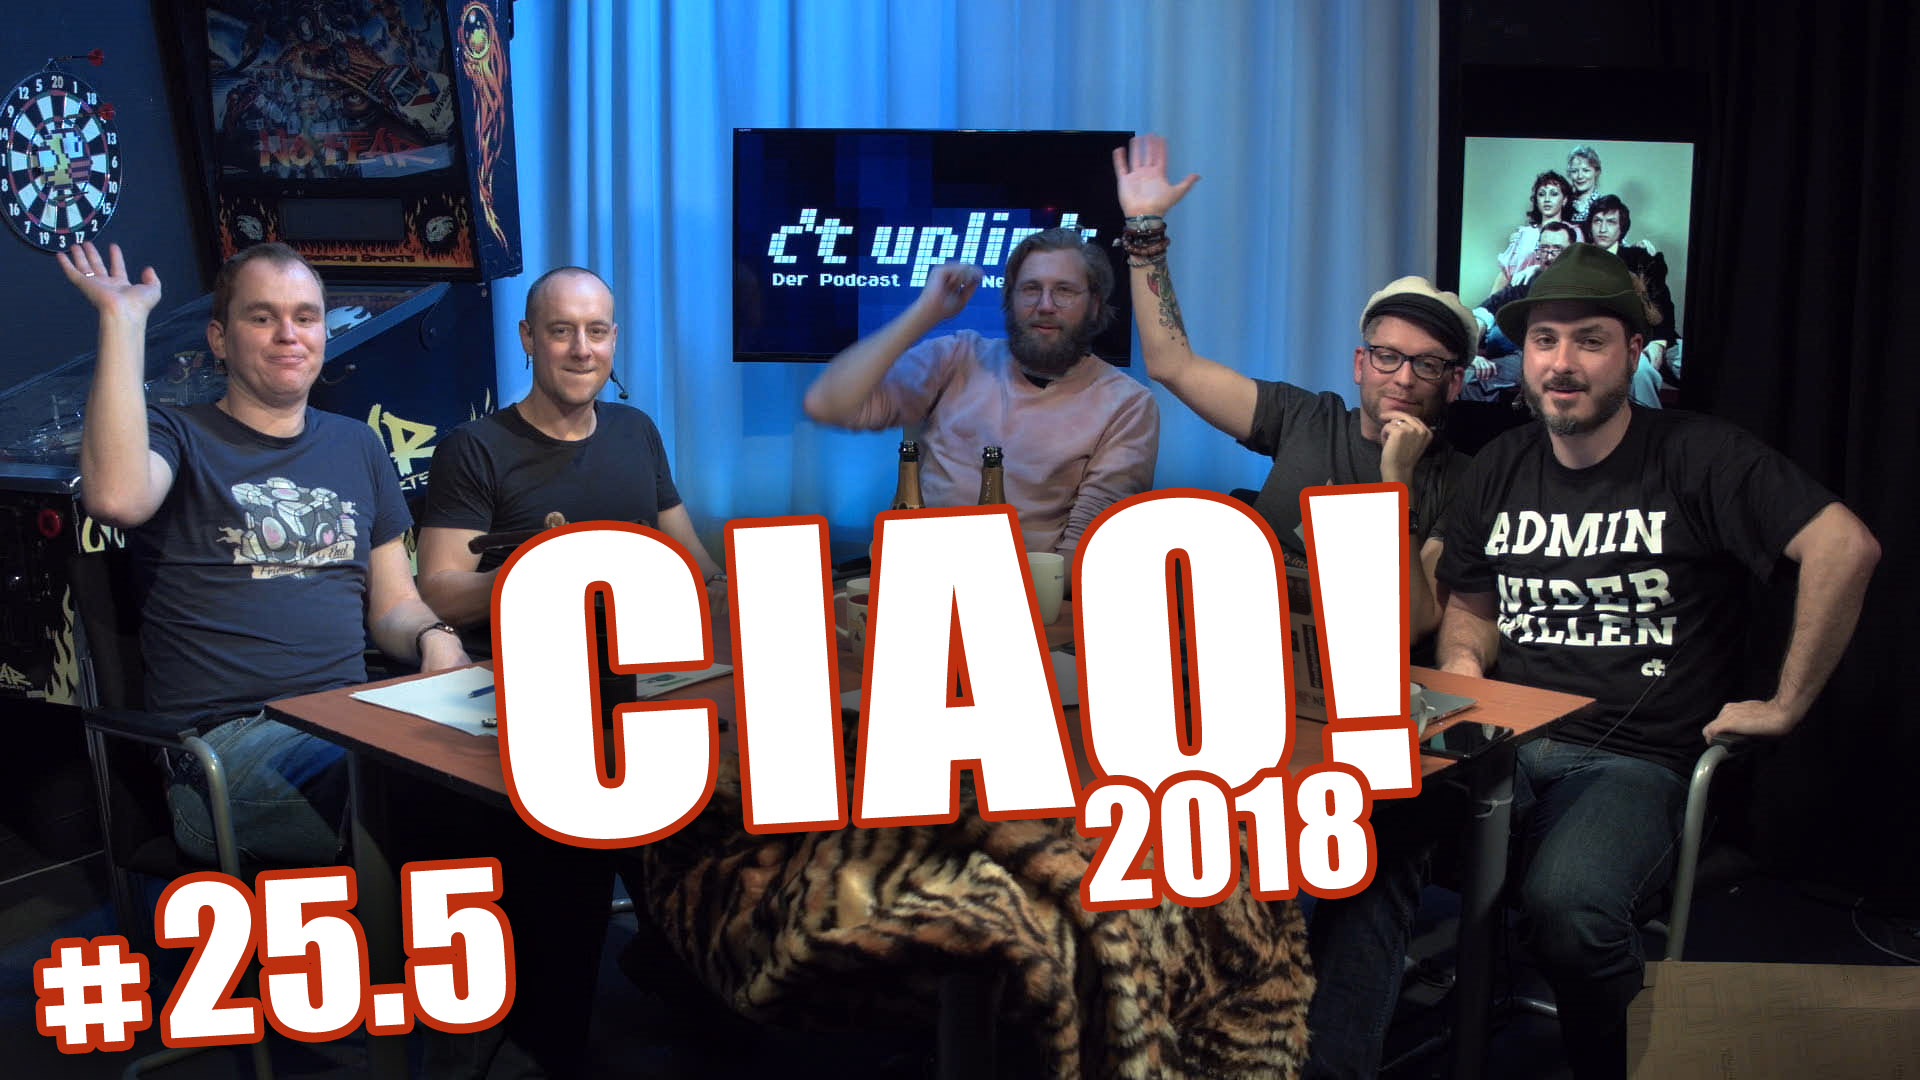 c't uplink 25.5: Ciao 2018 mit Spectre, DSGVO, Uhrzeit und Vorhersagen für 2019